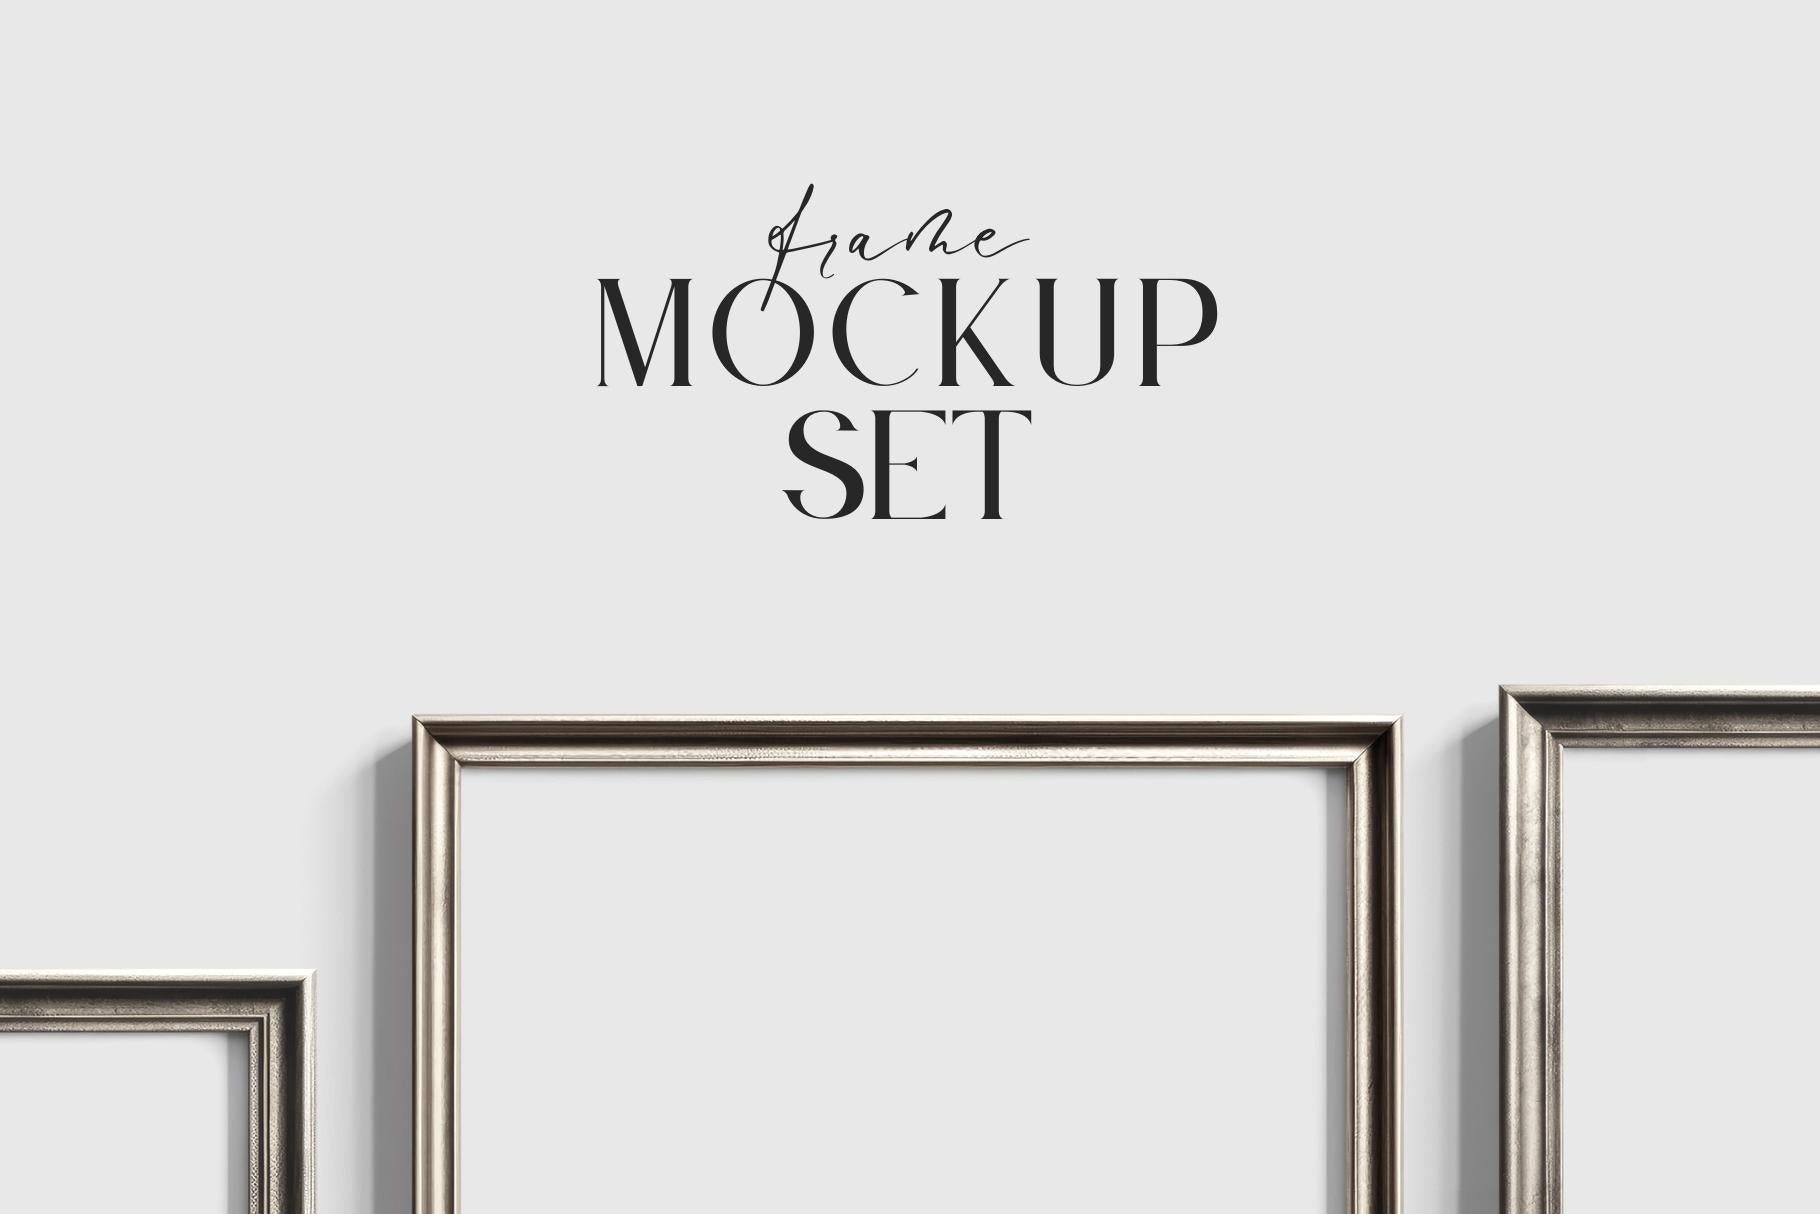 Gallery Wall Mockup | Metallic Frame Mockup Set of 5 Vertical Frames 5:7, 3:4 | Vintage Silver Frame Mockup Set | PSD Template + Transparent PNG Files